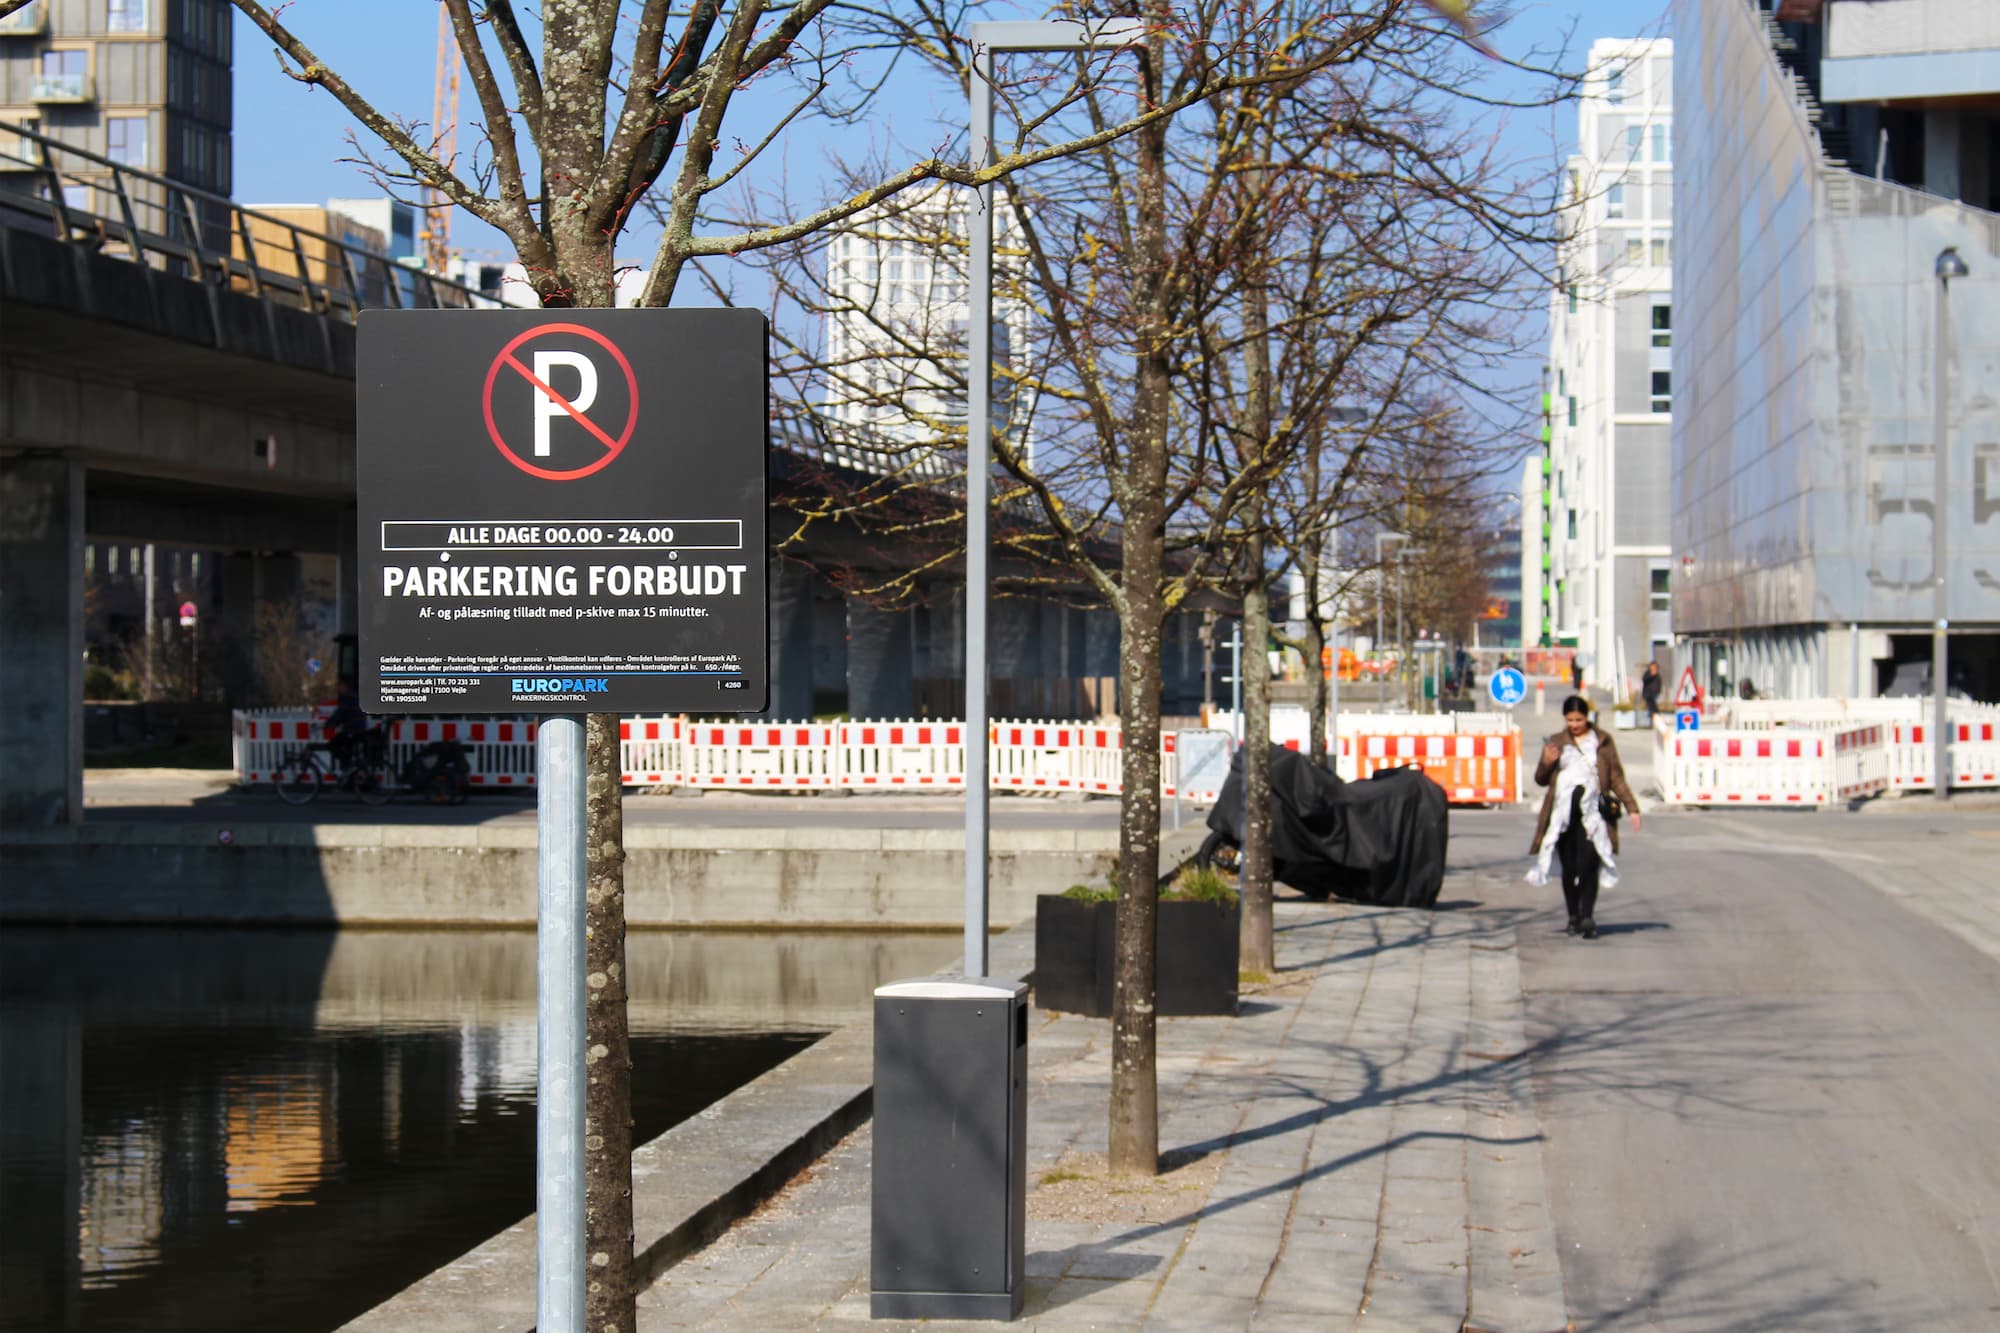 Grundejerforeningerne er i gang med at overgå til privat p-kontrol i Ørestad. På billedet ses et p-skilt i Sivegaden i Ørestad City med teksten "Parkering forbudt". Skiltet er opstillet af Apcoa Parking for Grundejerforeningen Ørestad City.